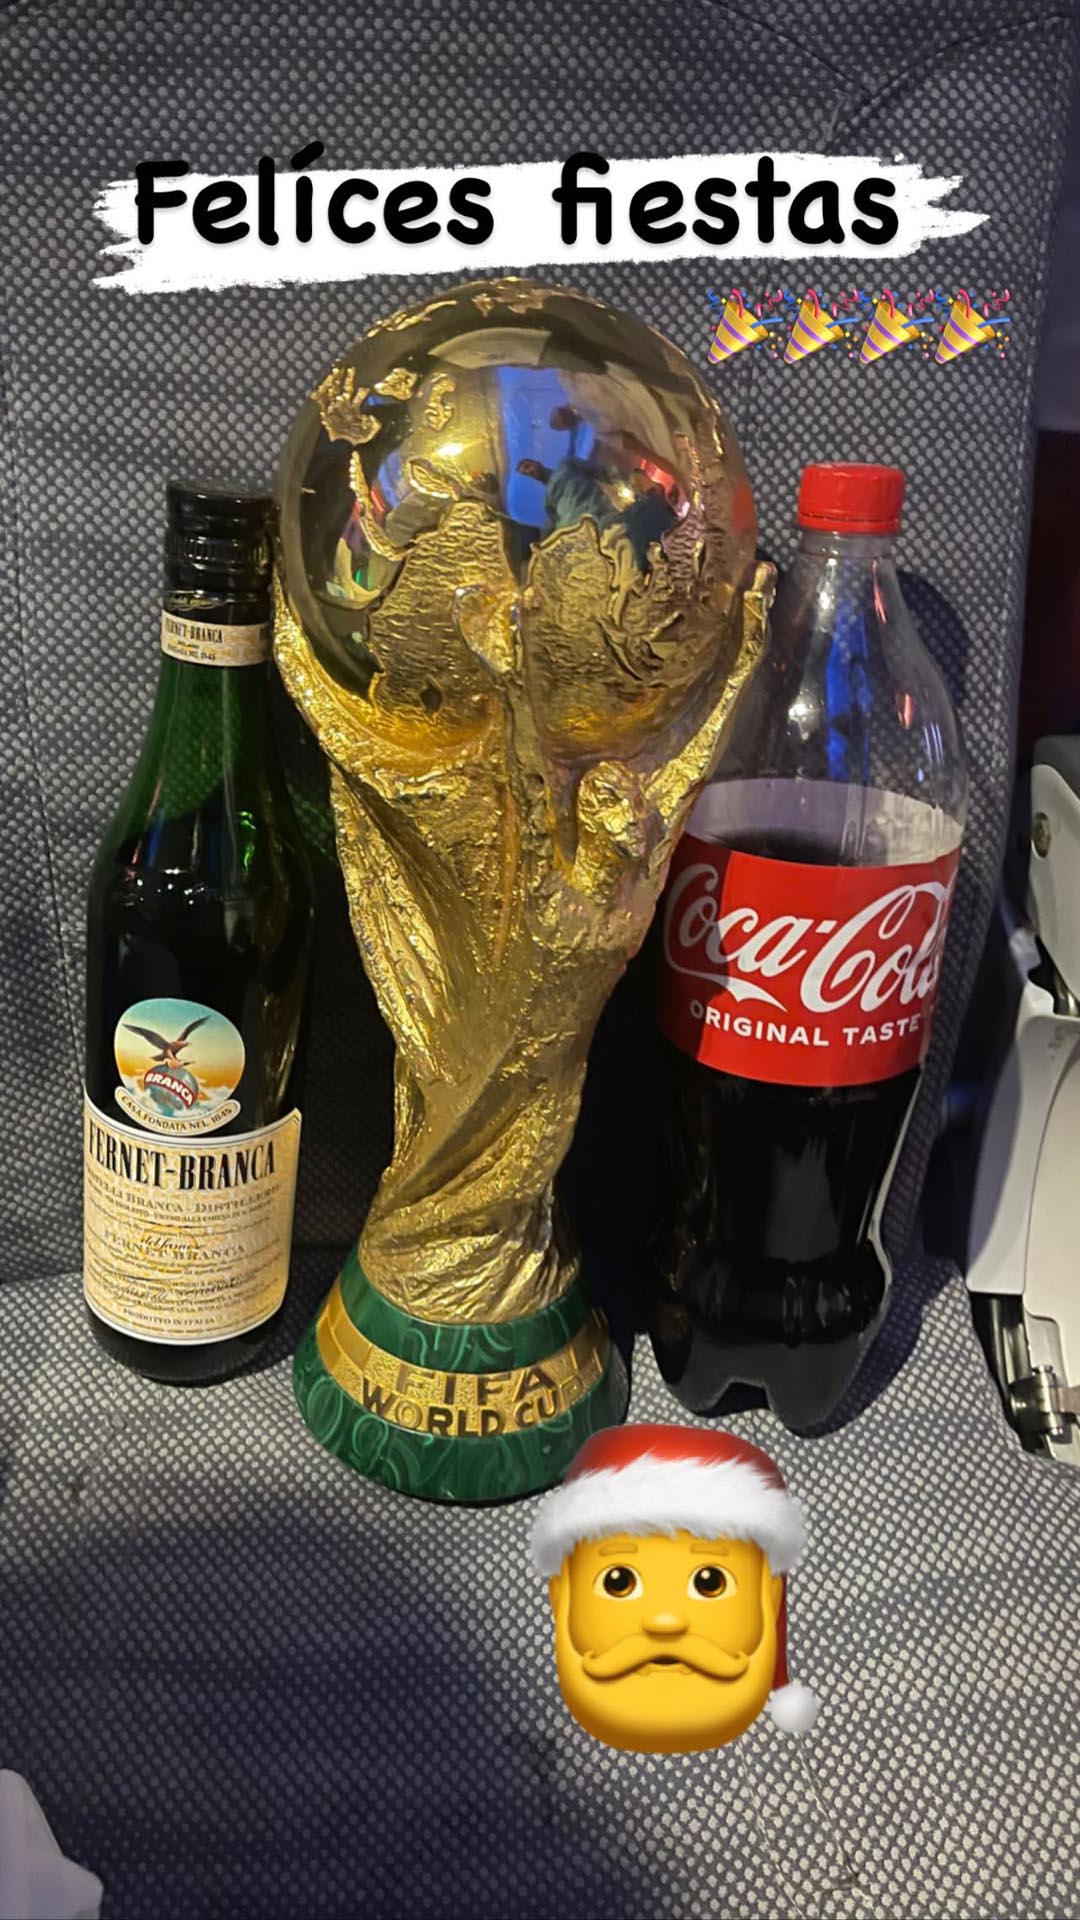 La Copa y el Fernet: Acuña celebró navidad y lo compartió en Instagram